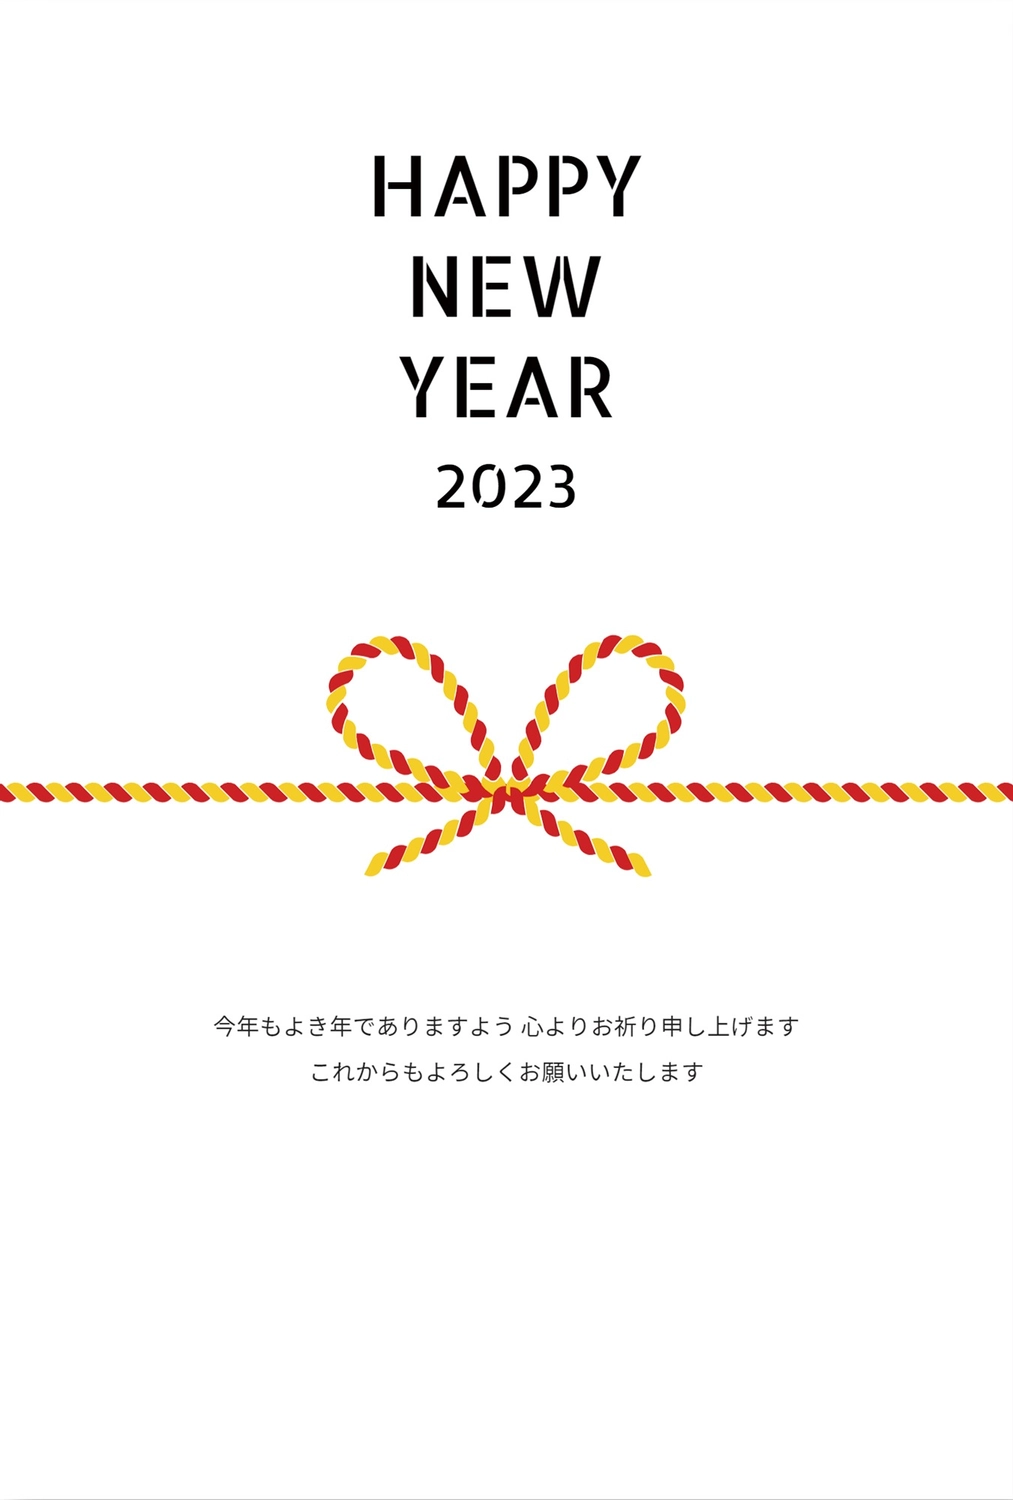 水引　HAPPY NEW YEAR, シンプル, 令和5年, 2023, 年賀状テンプレート